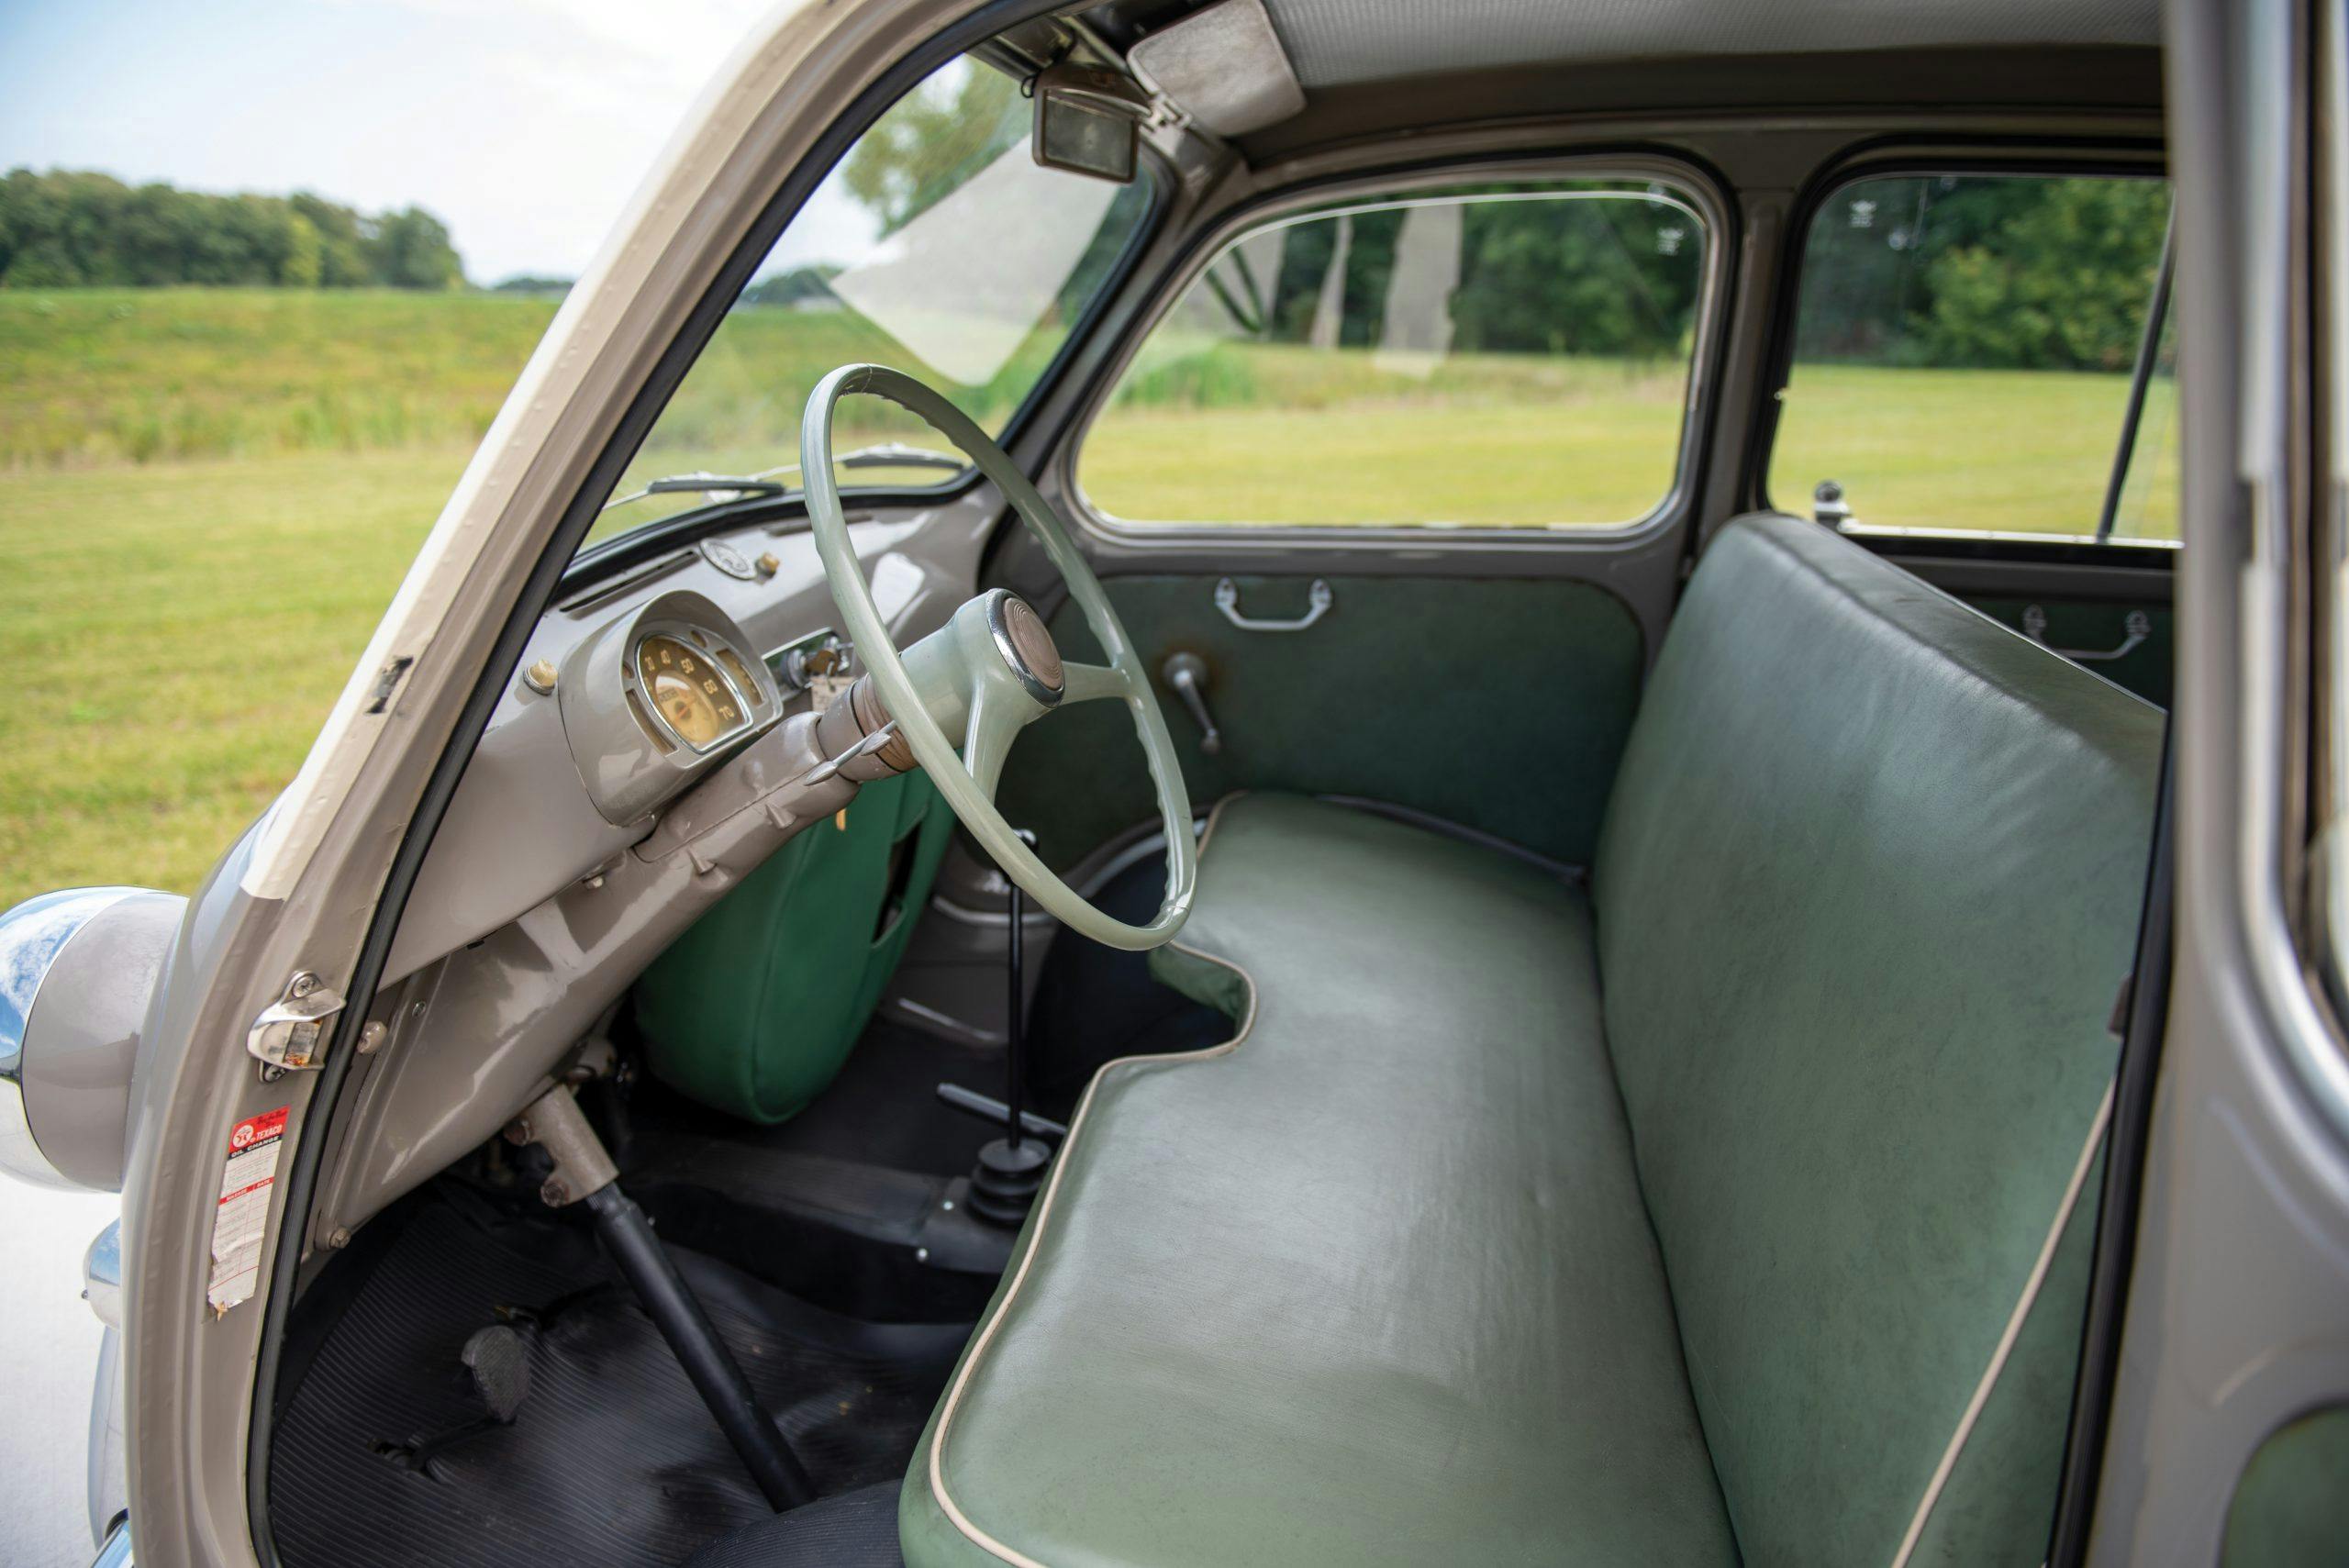 1958 Fiat 600 Multipla interior